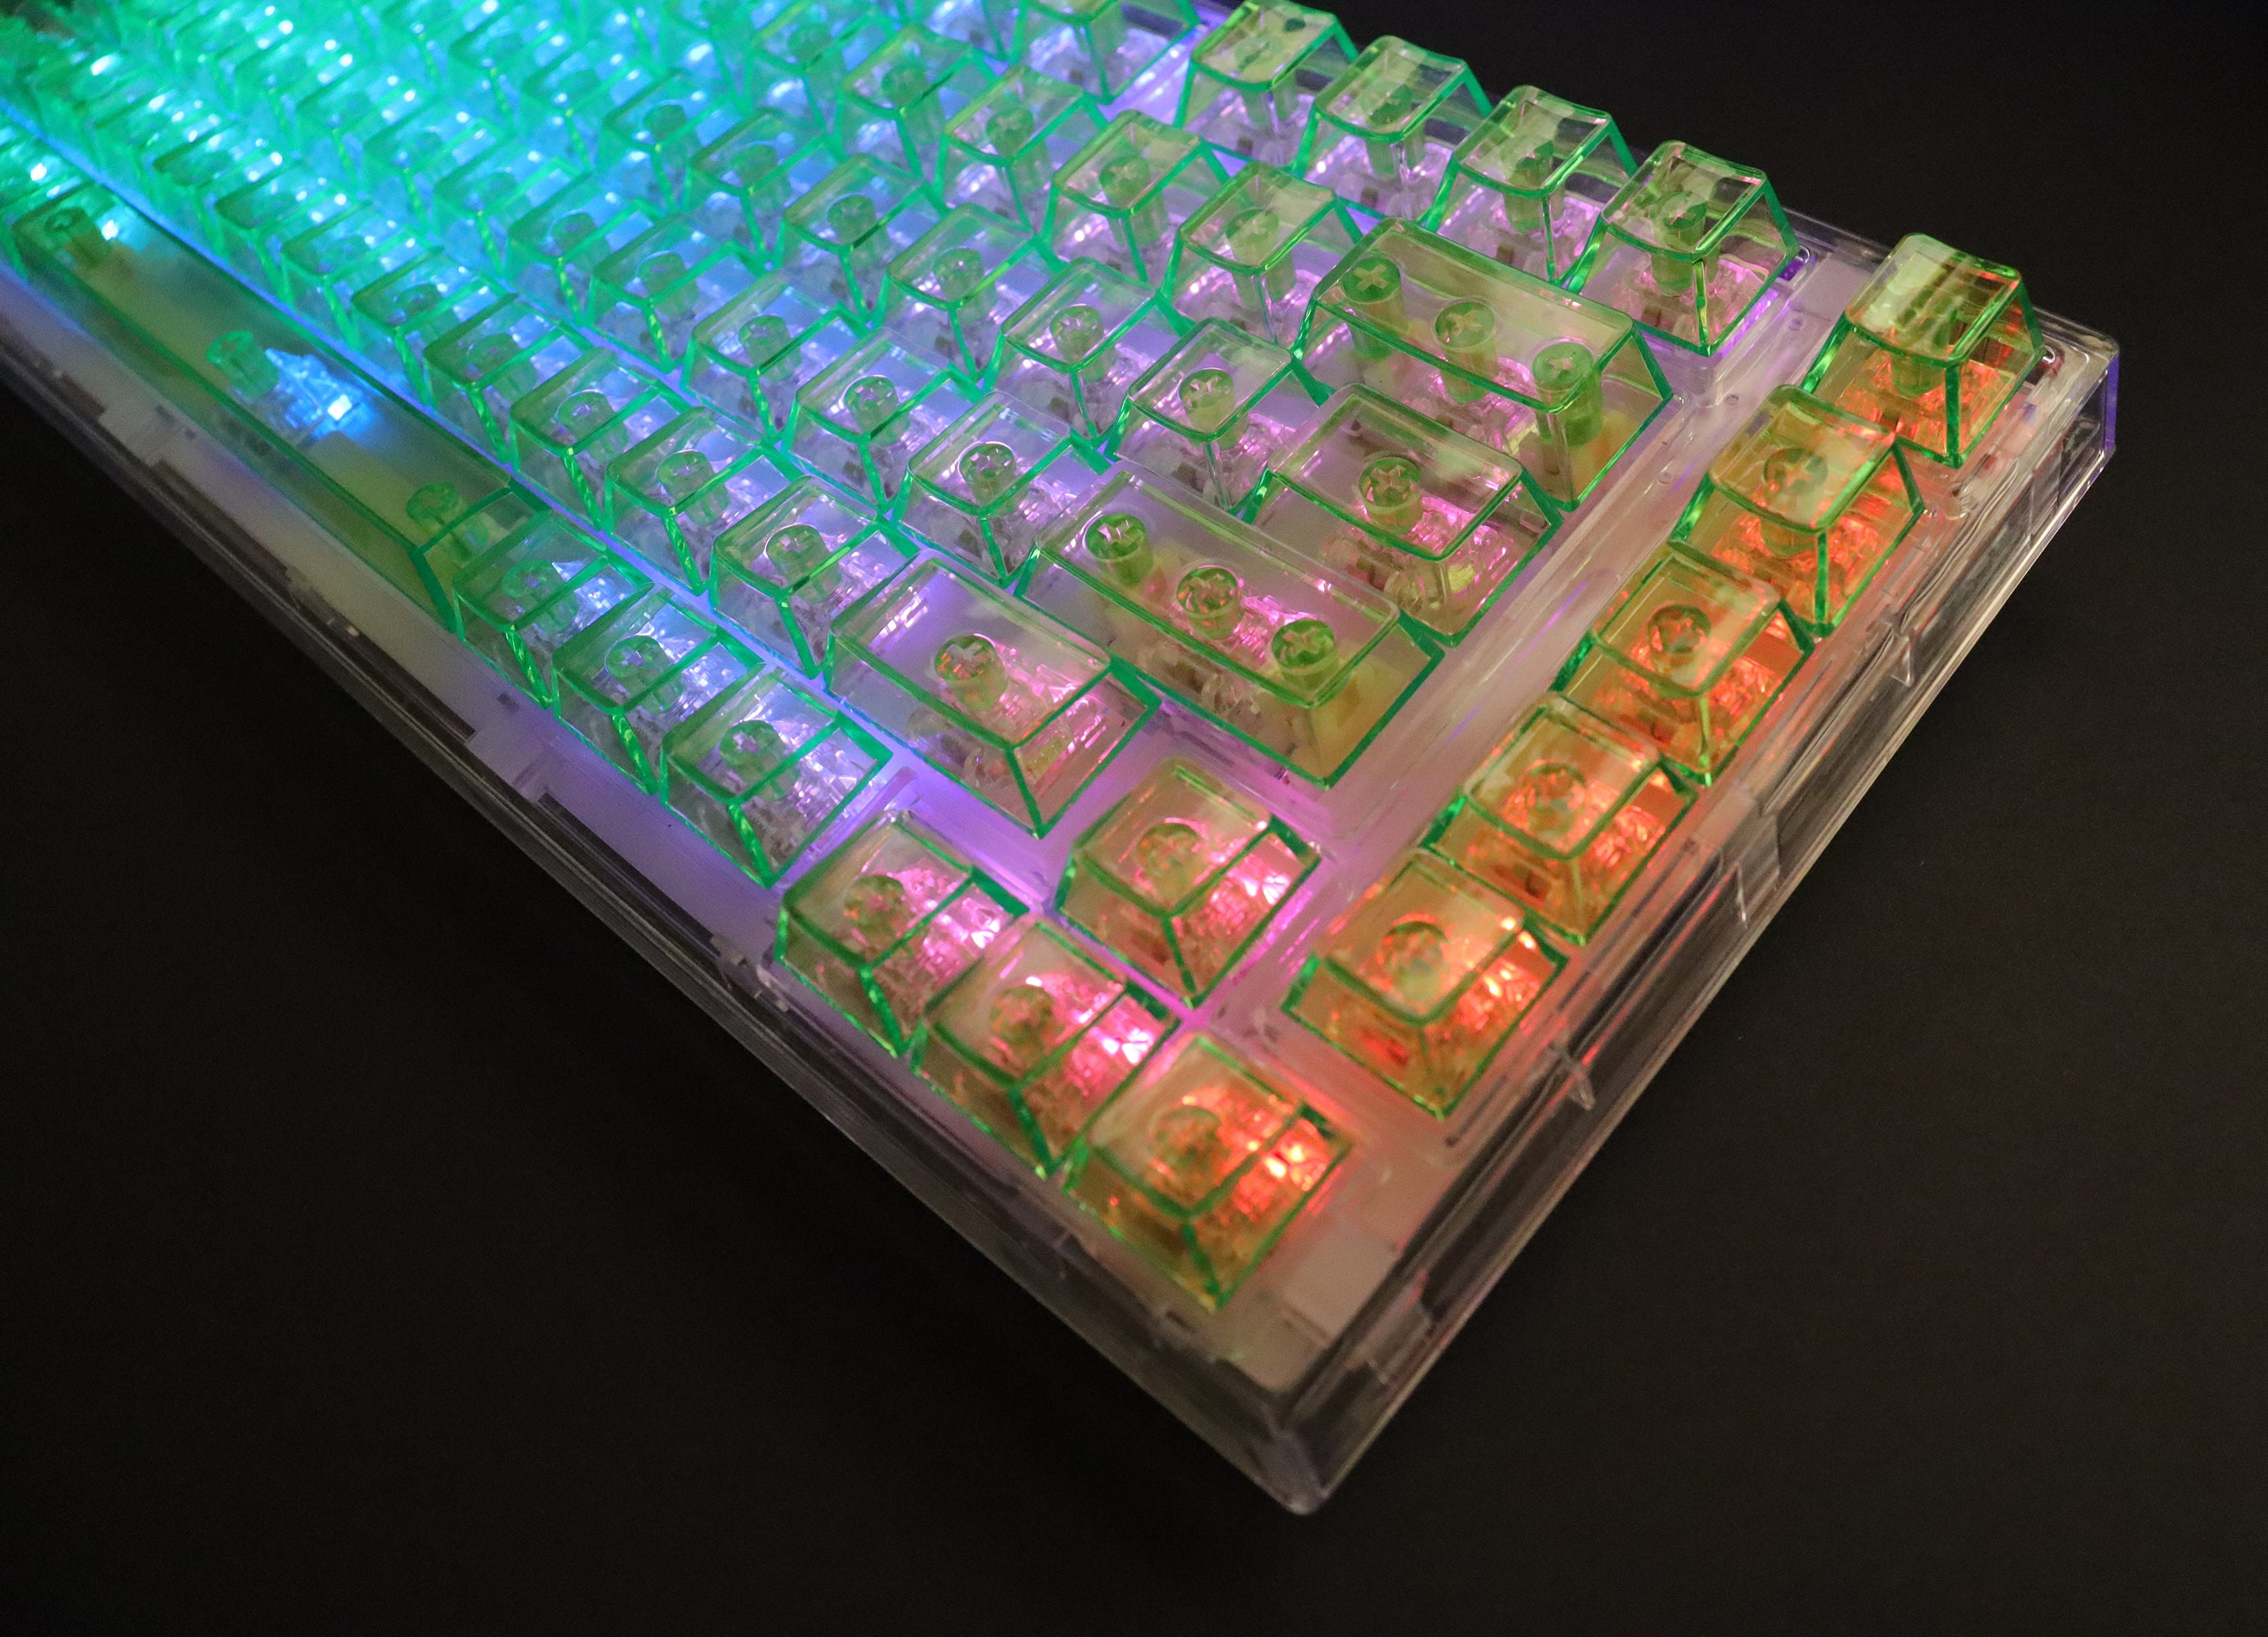 MasterKeys Pro L RGB - Clear Edition, un clavier qu'il est tout transparent  chez Cooler Master